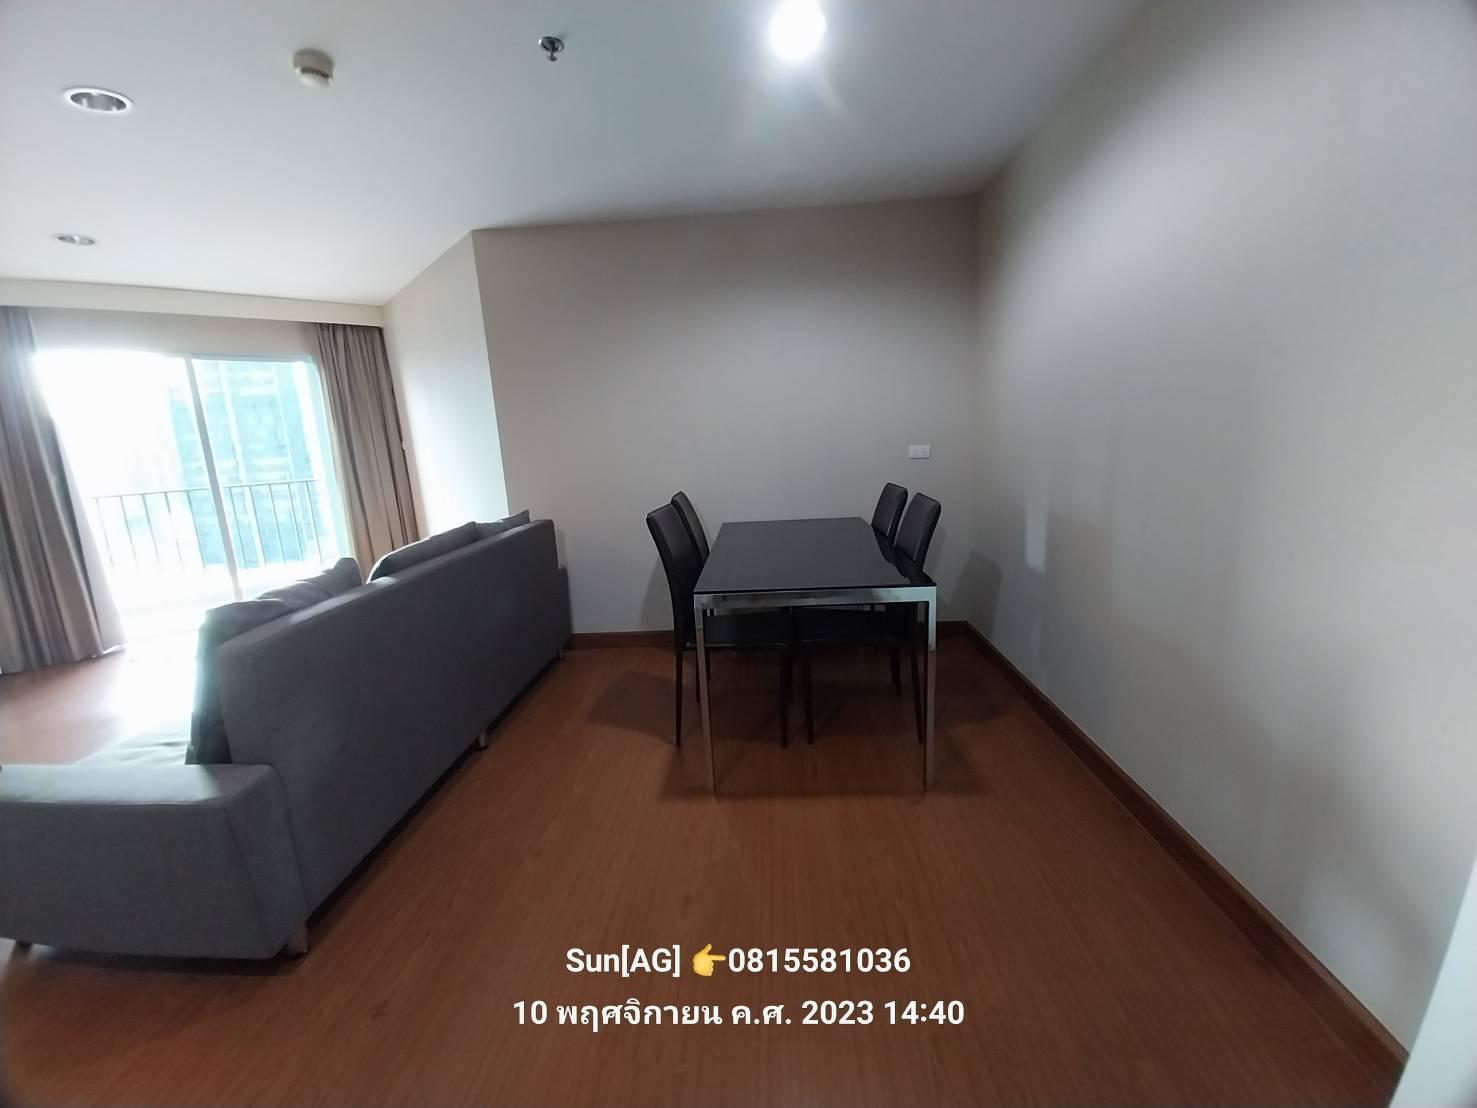 เช่าคอนโด เบ็ล อเวนิว (รัชดา-พระราม9) คอนโดมิเนียม - Condo Rental Belle Avenue (Ratchada-Rama9) condominium - 2628519